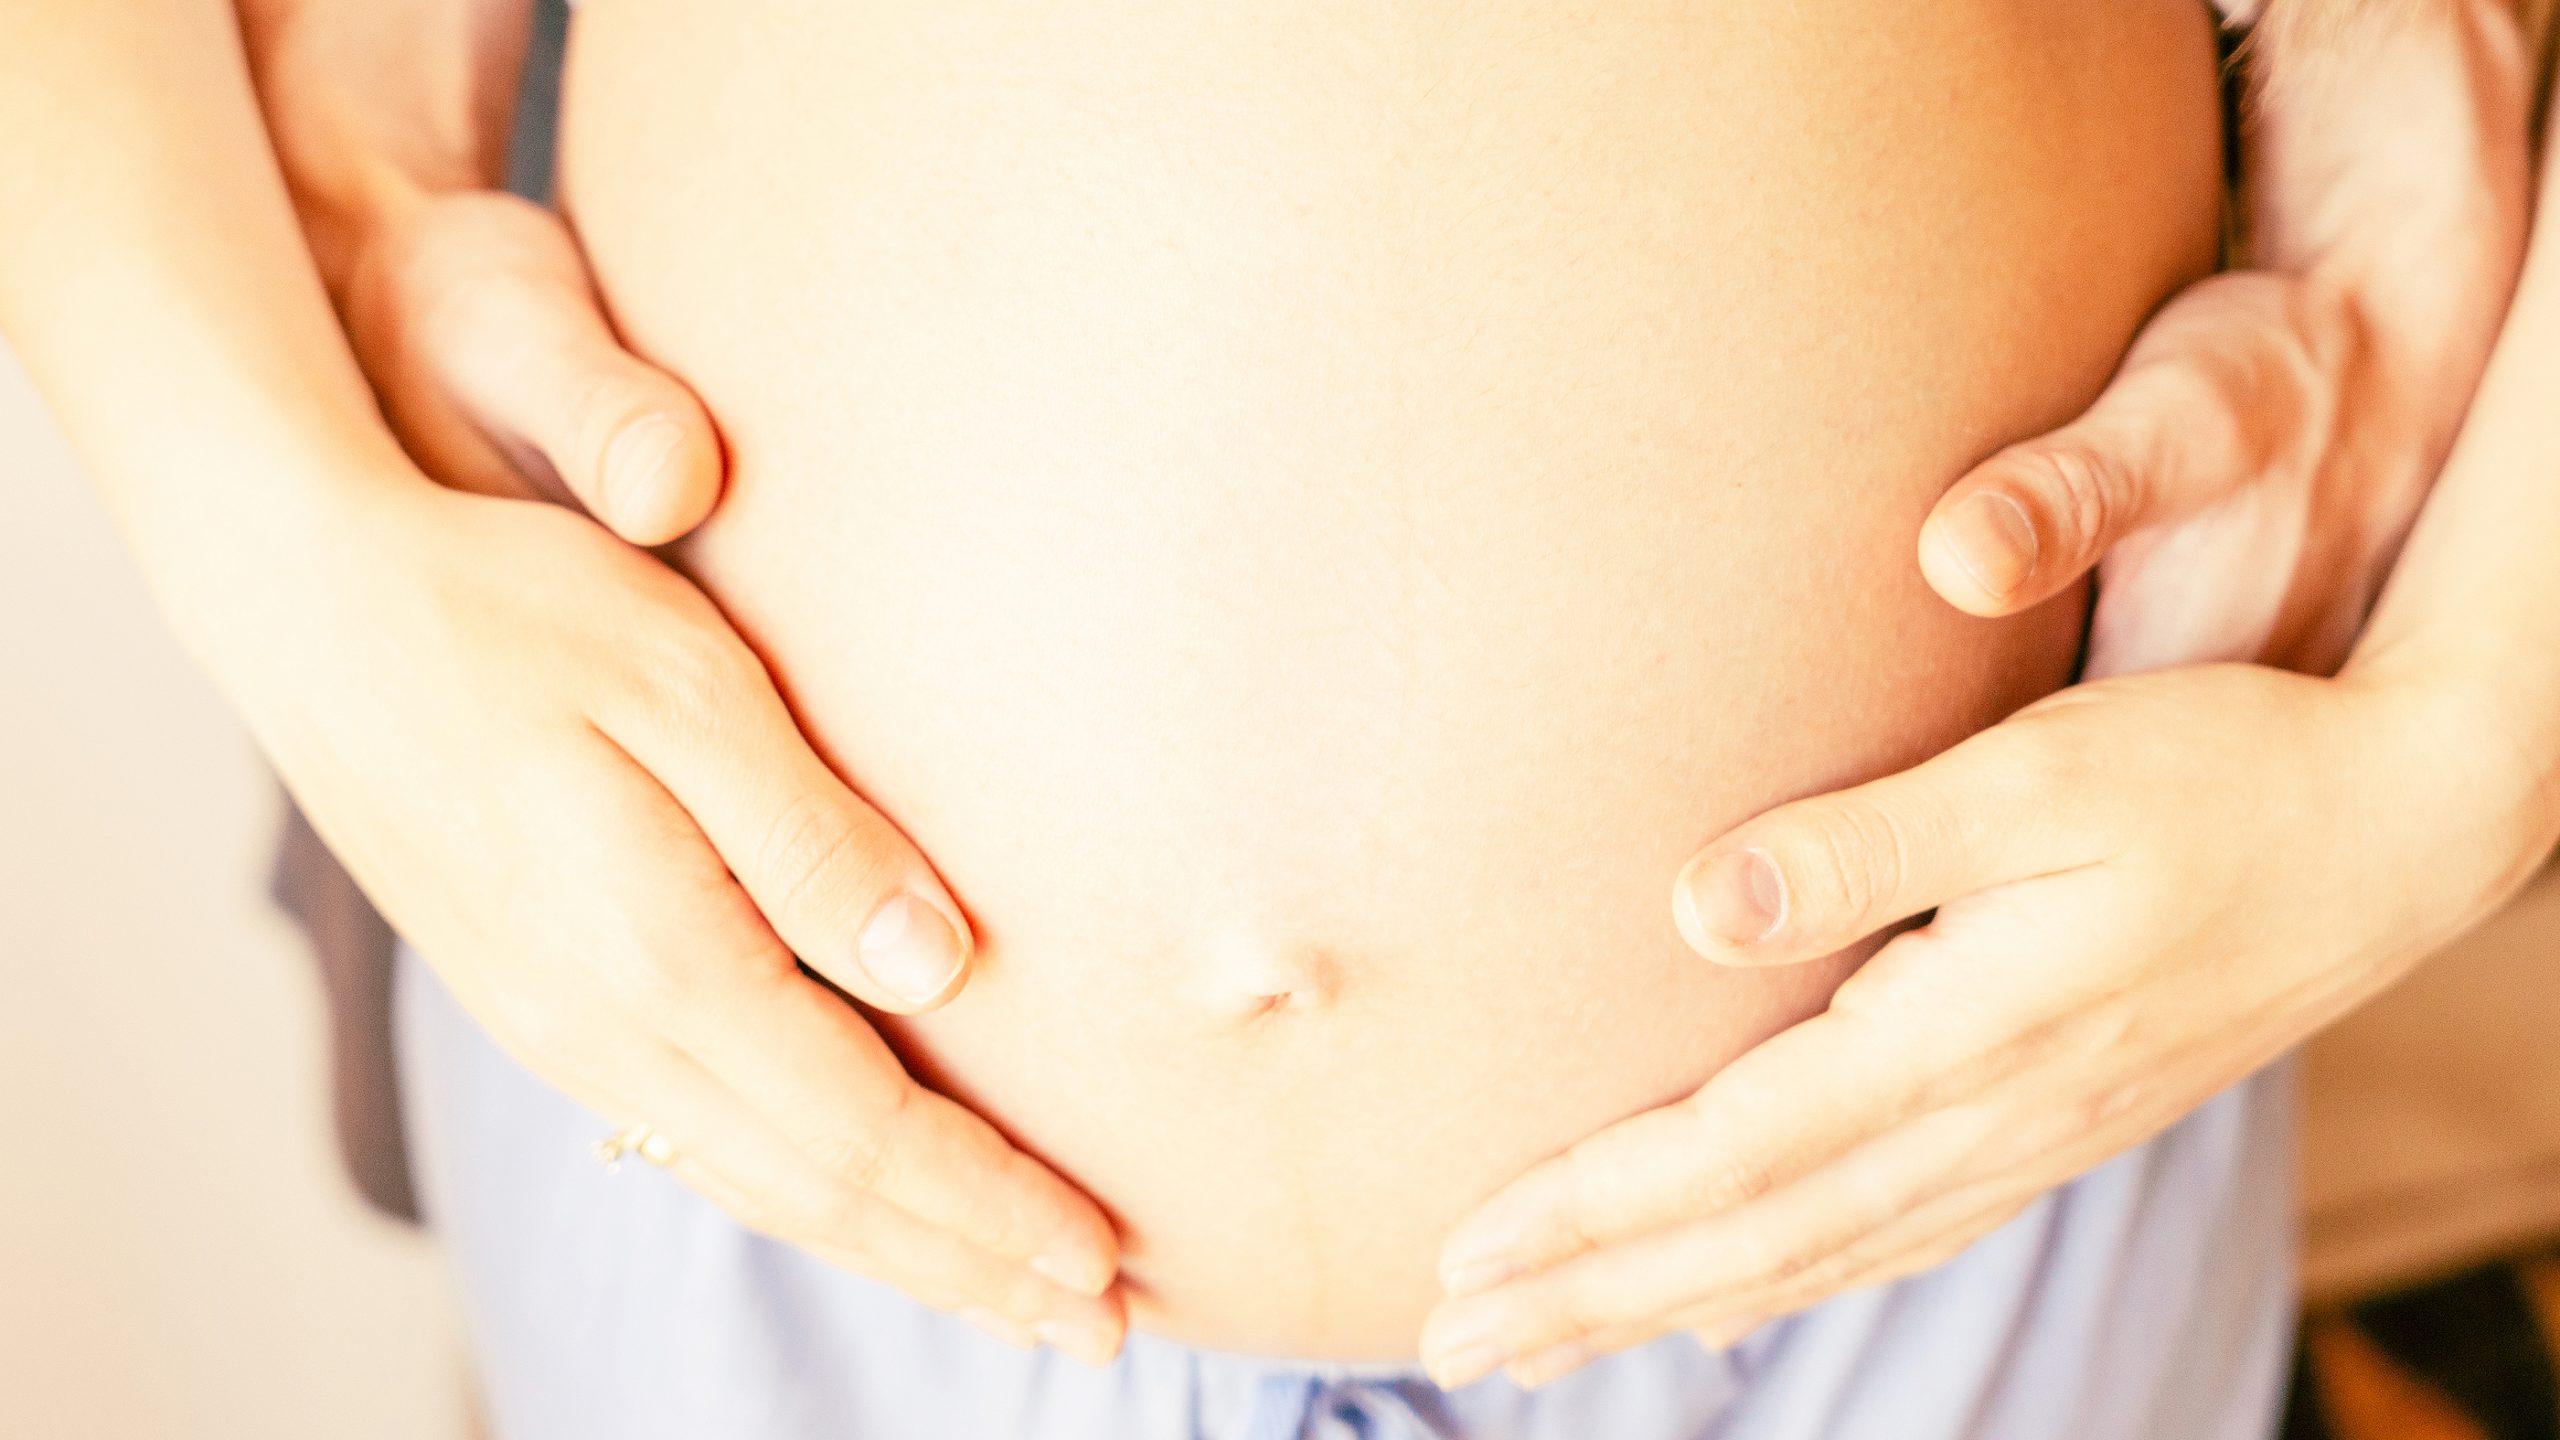 Guante inteligente detecta la posición fetal y evita parto peligroso